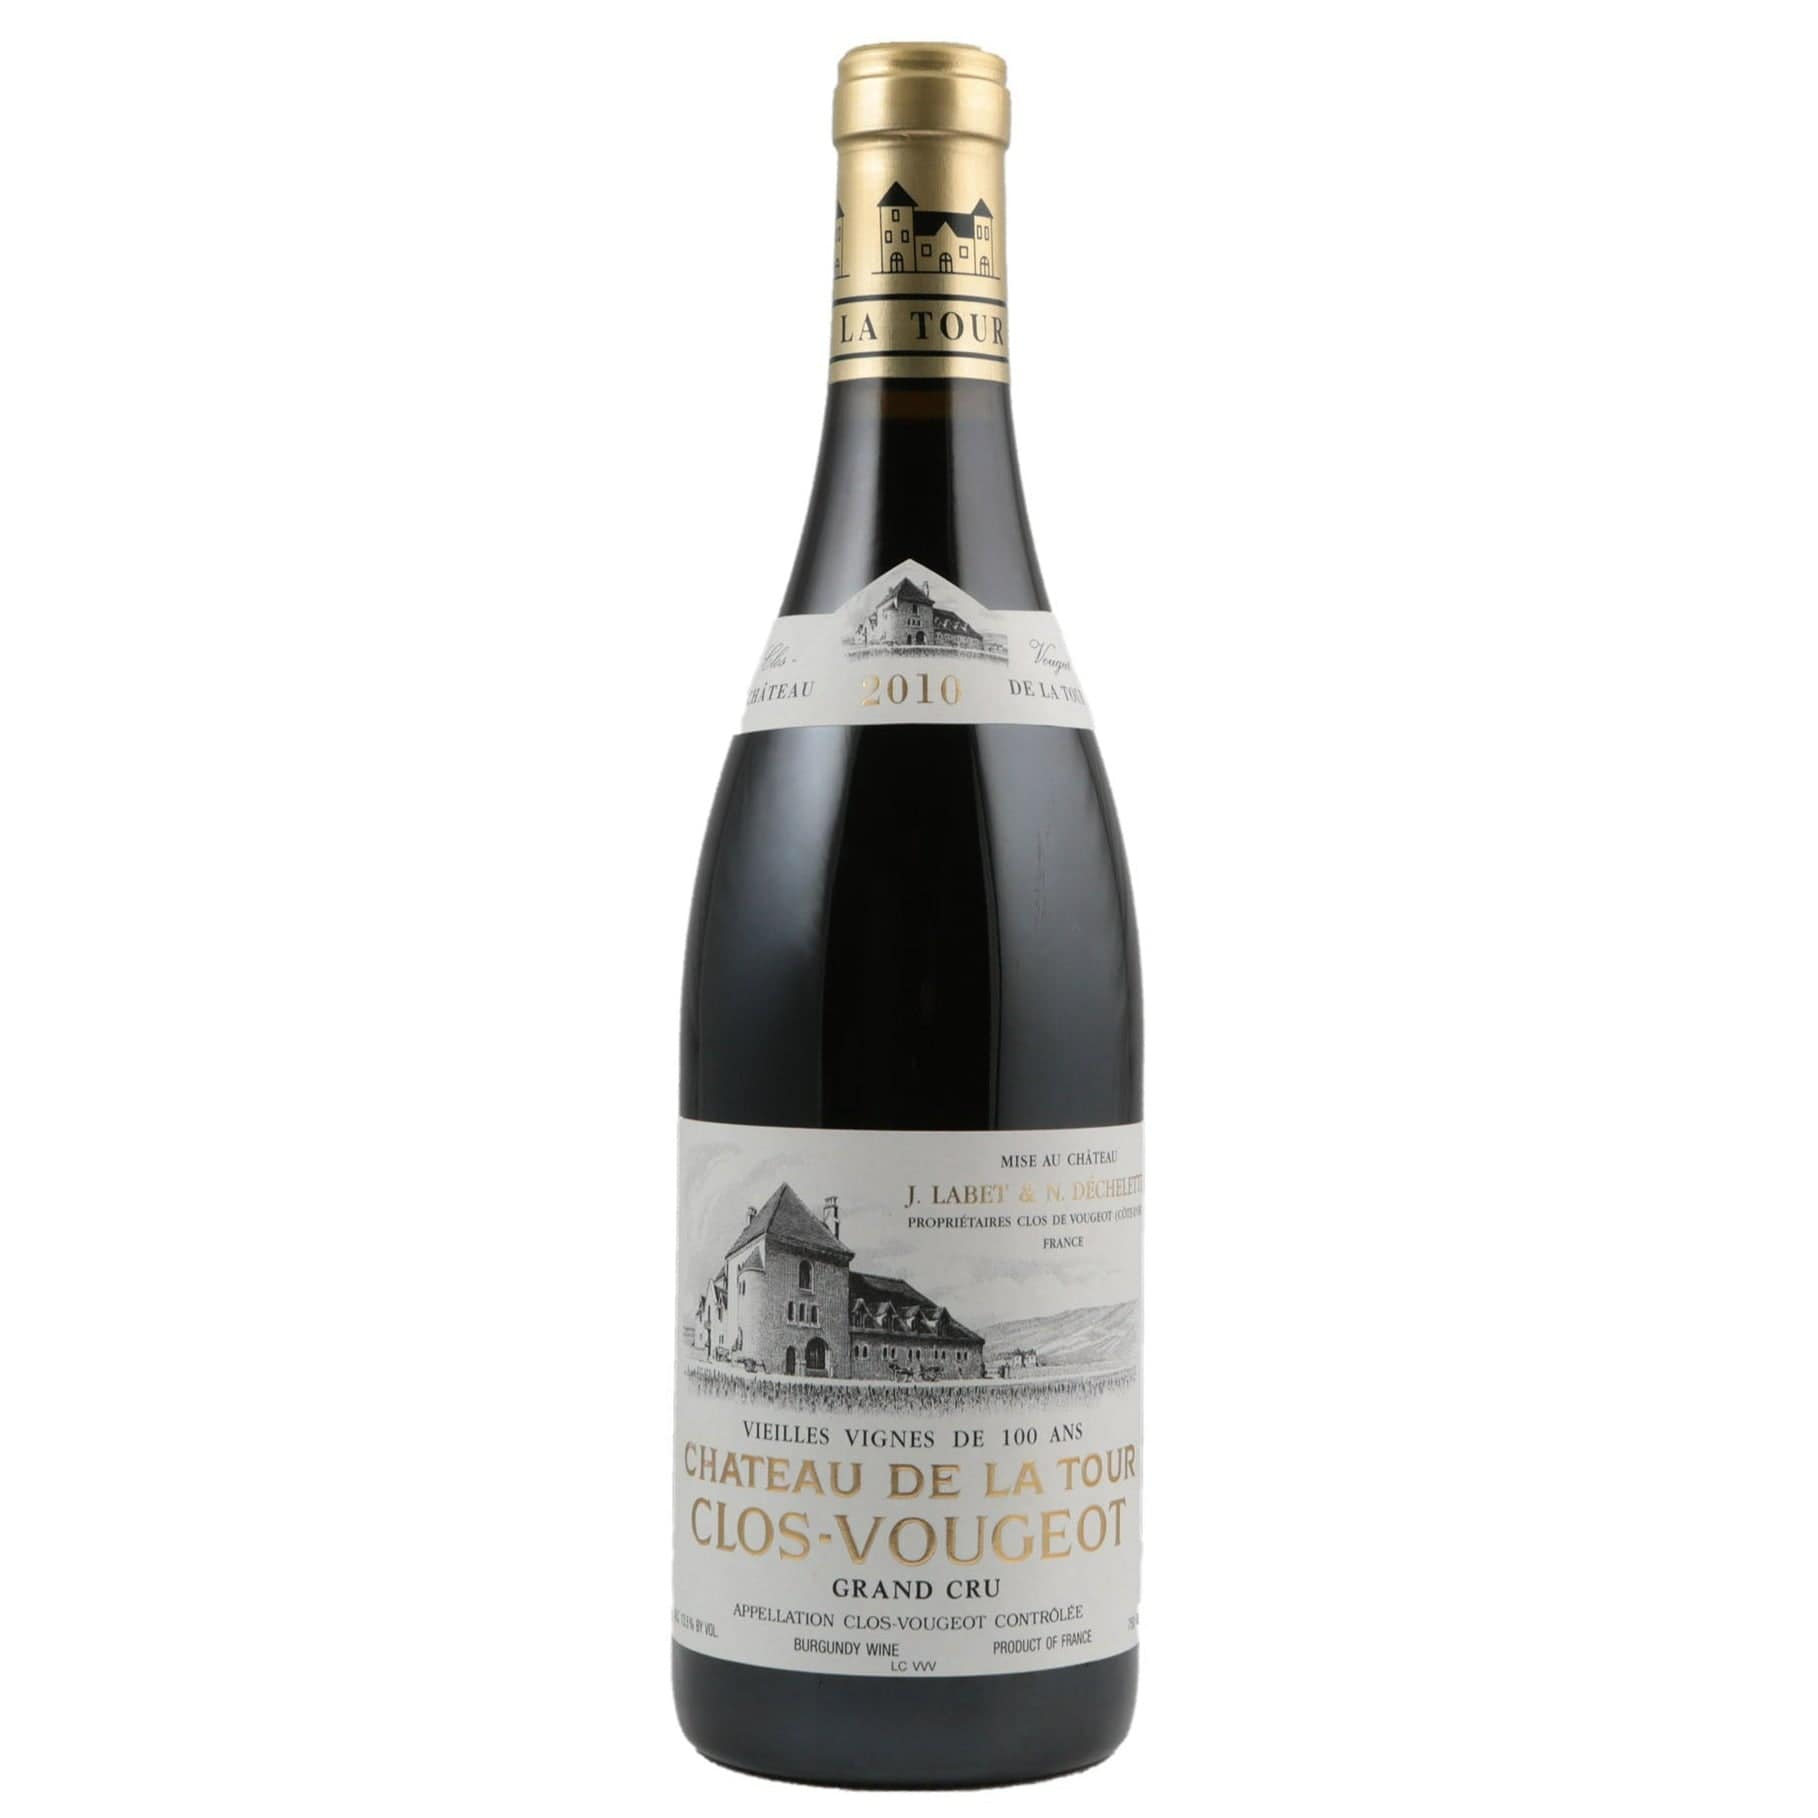 Single bottle of Red wine Ch. de la Tour, Clos de Vougeot Vieilles Vignes Grand Cru, Vougeot, 2010 100% Pinot Noir